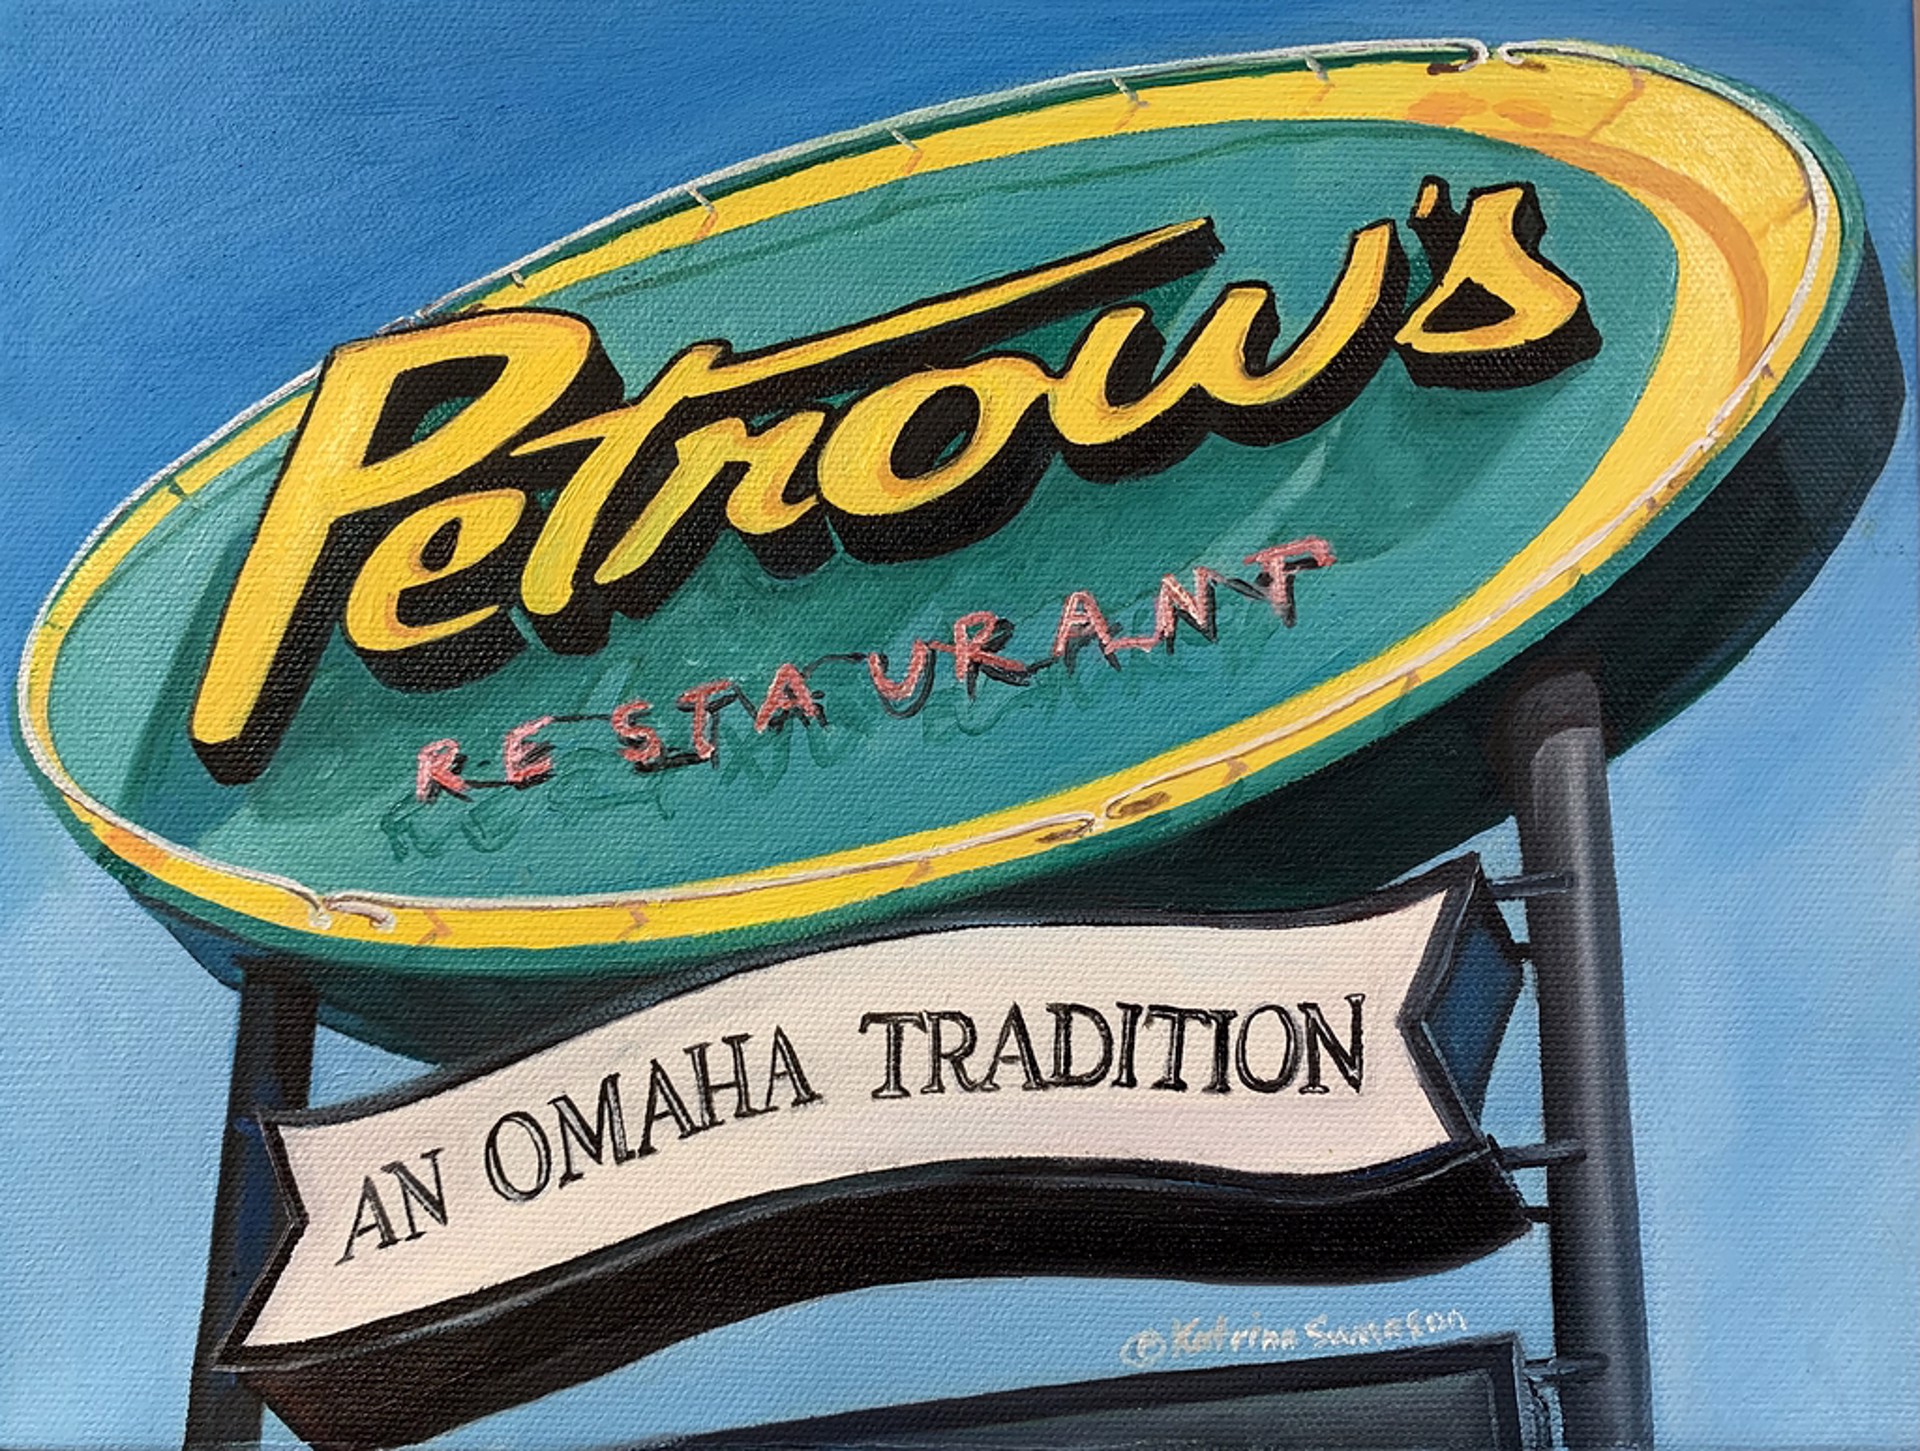 Petrow's by Katrina Swanson